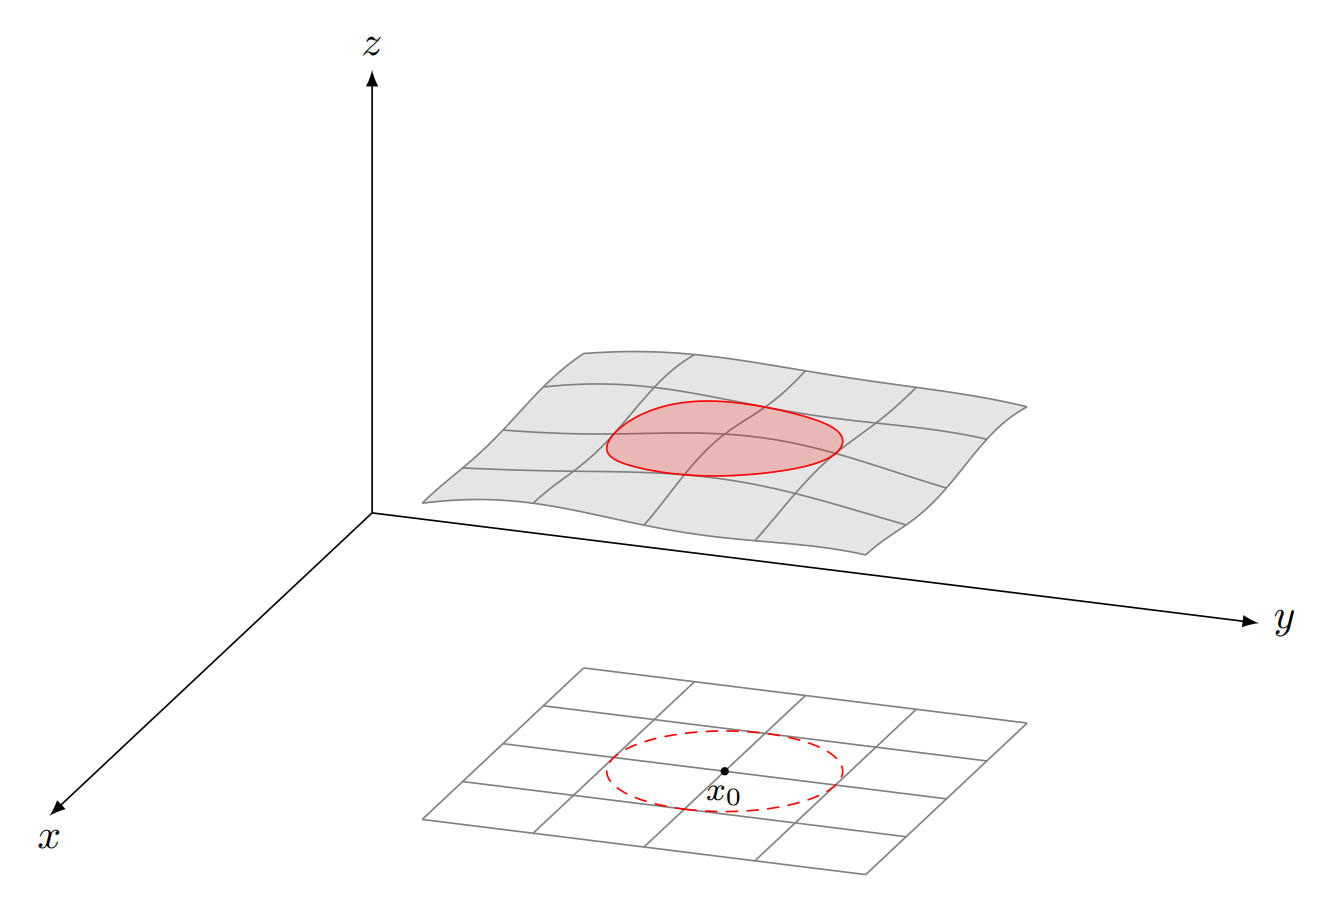 TikZ 绘制一个函数的投影示意图